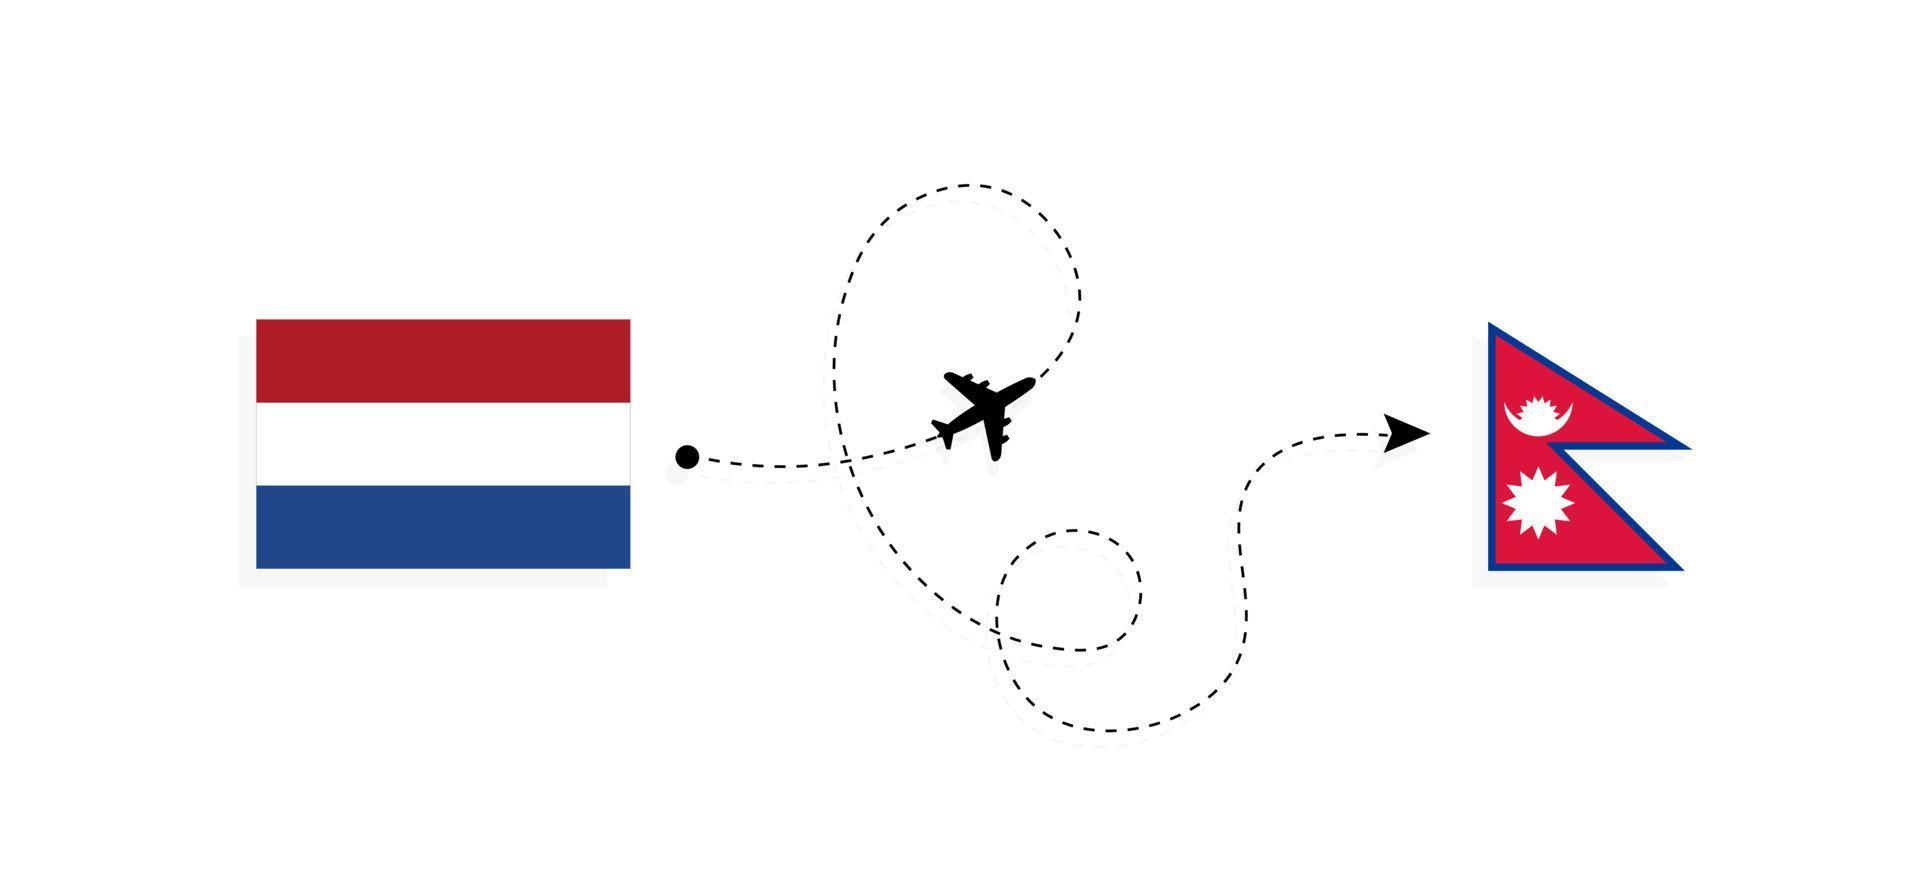 flyg och resor från Nederländerna till Nepal med passagerarflygplan vektor